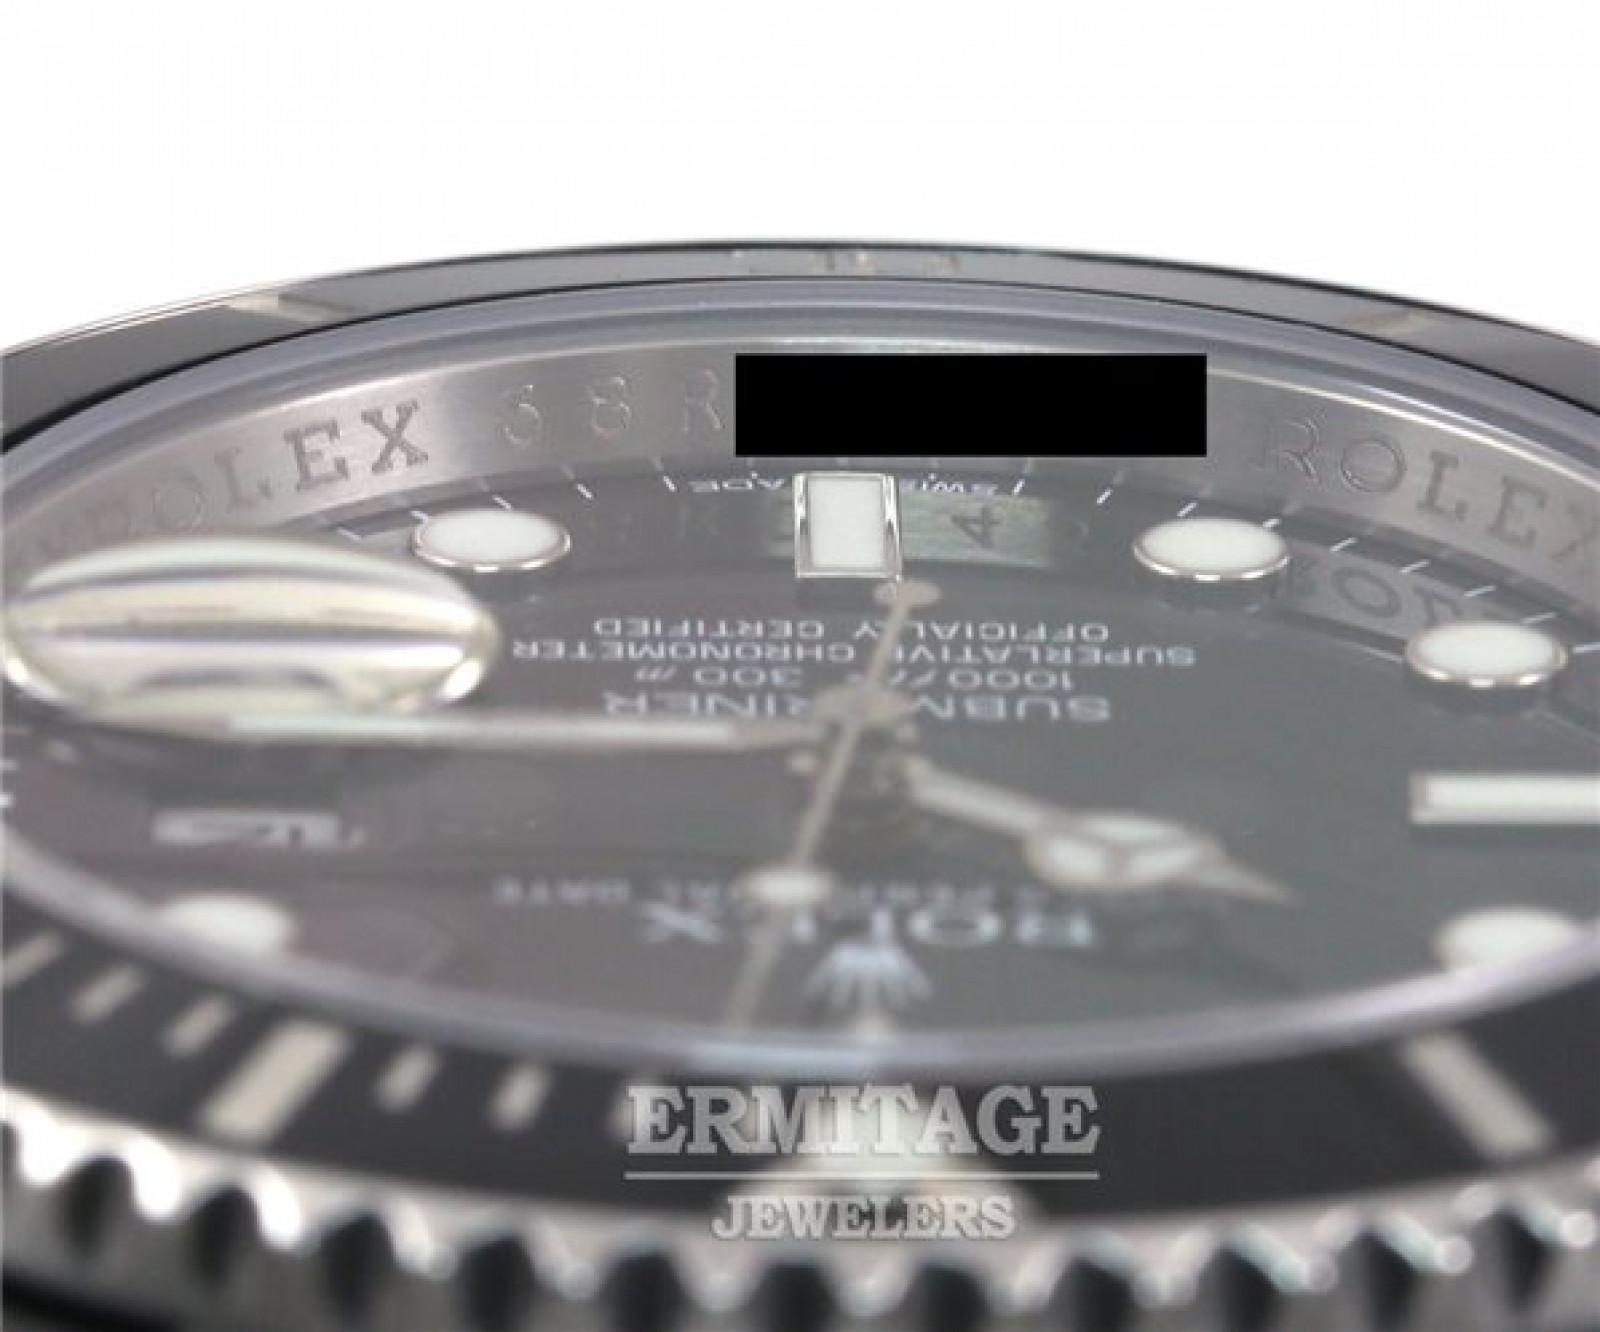 Steel Black Rolex Submariner 116610